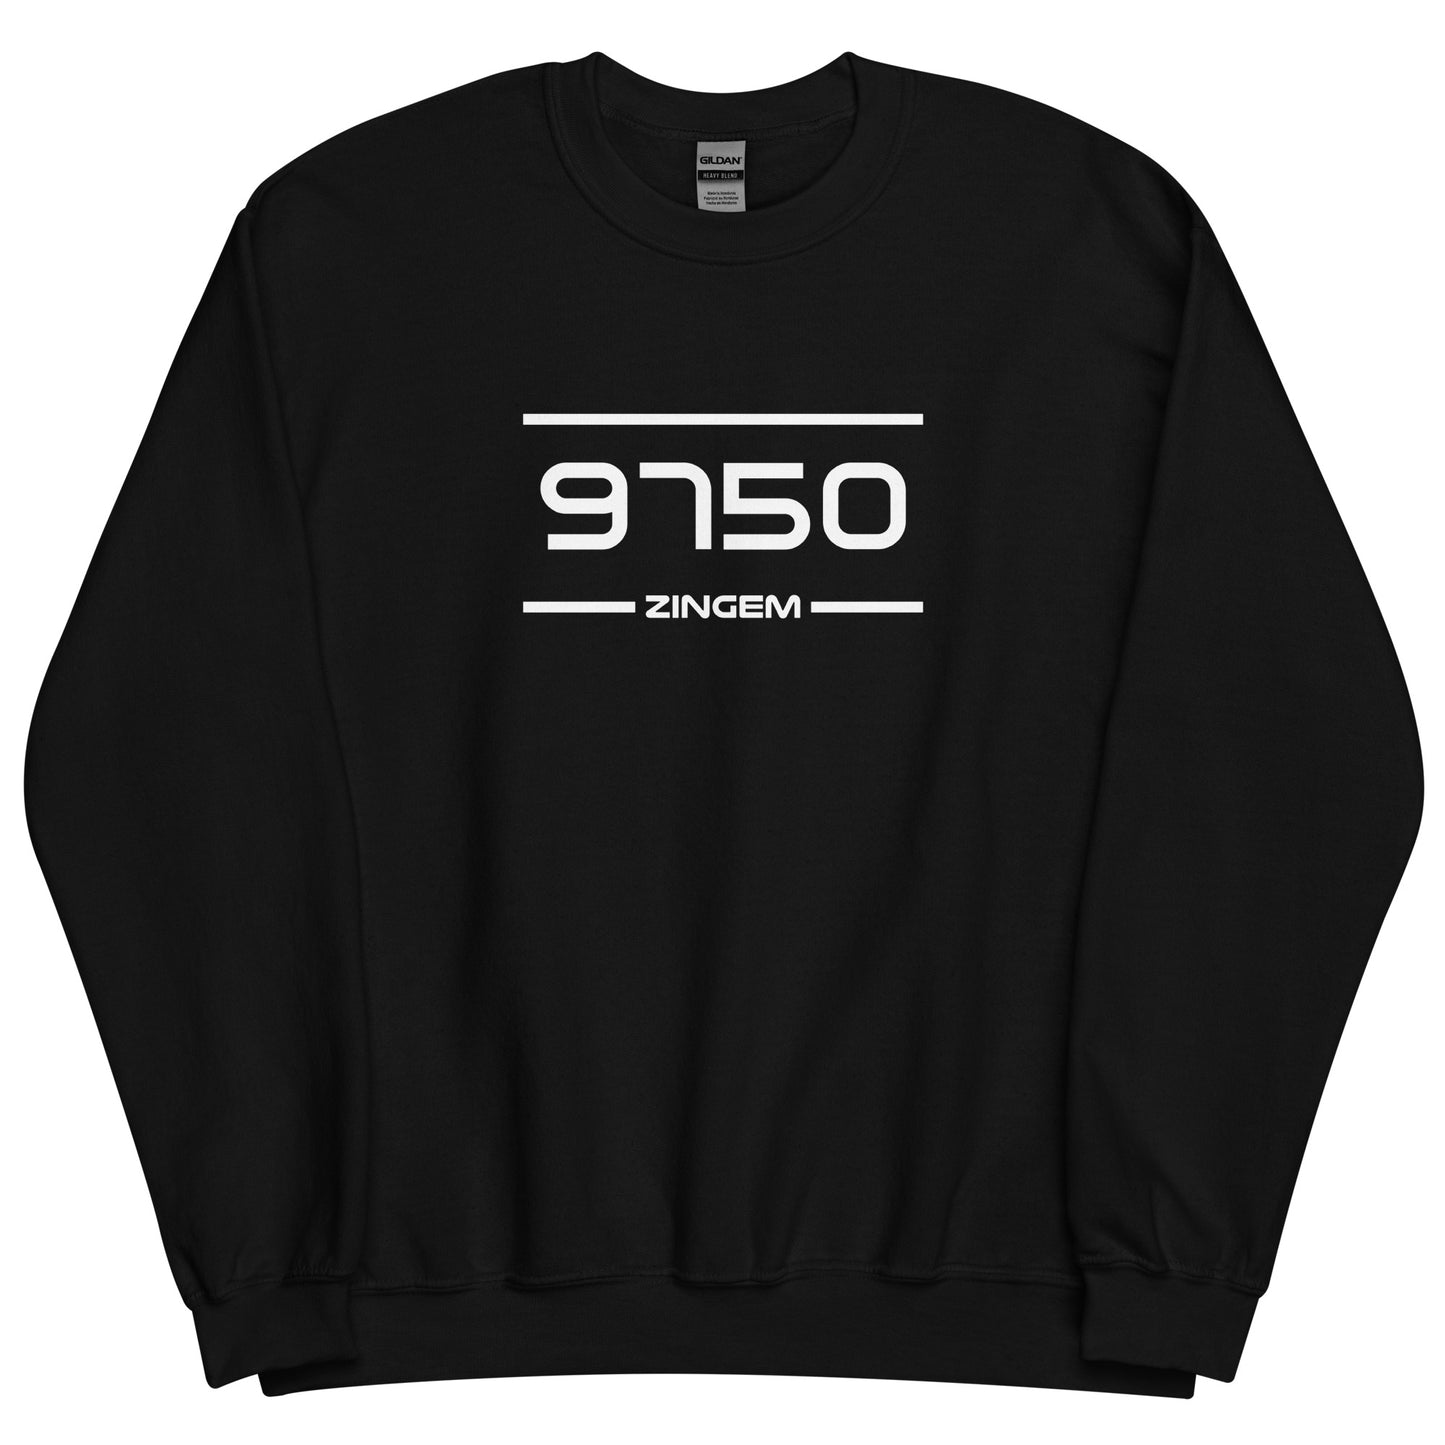 Sweater - 9750 - Zingem (M/V)